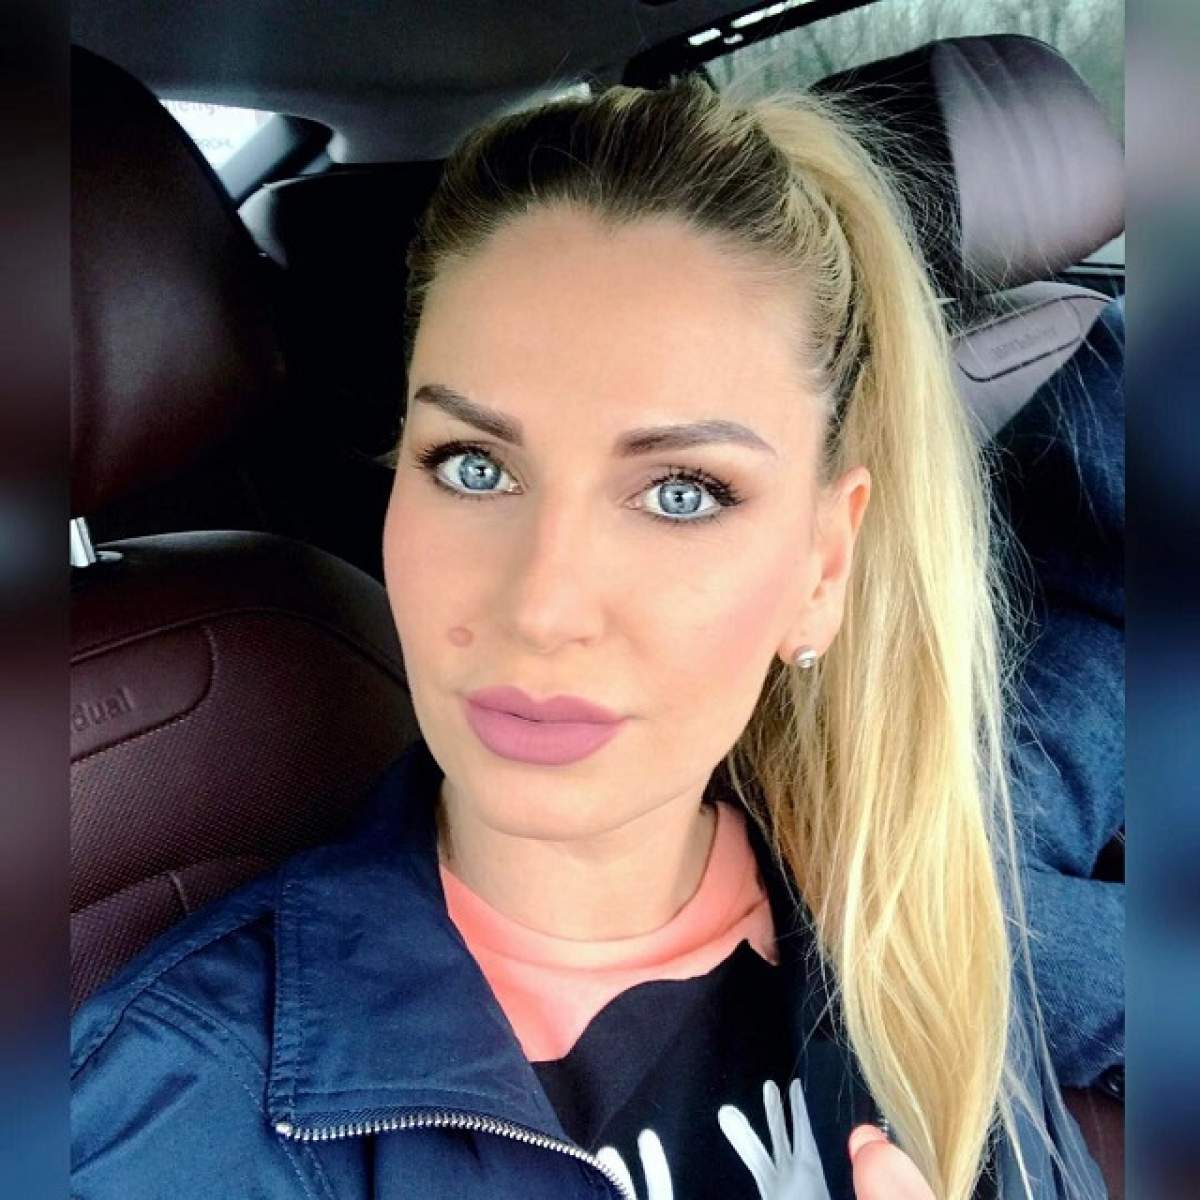 VIDEO / Andreea Bănică şi-a tatuat sprâncenele şi s-a filmat nemachiată! Ce diferenţă!